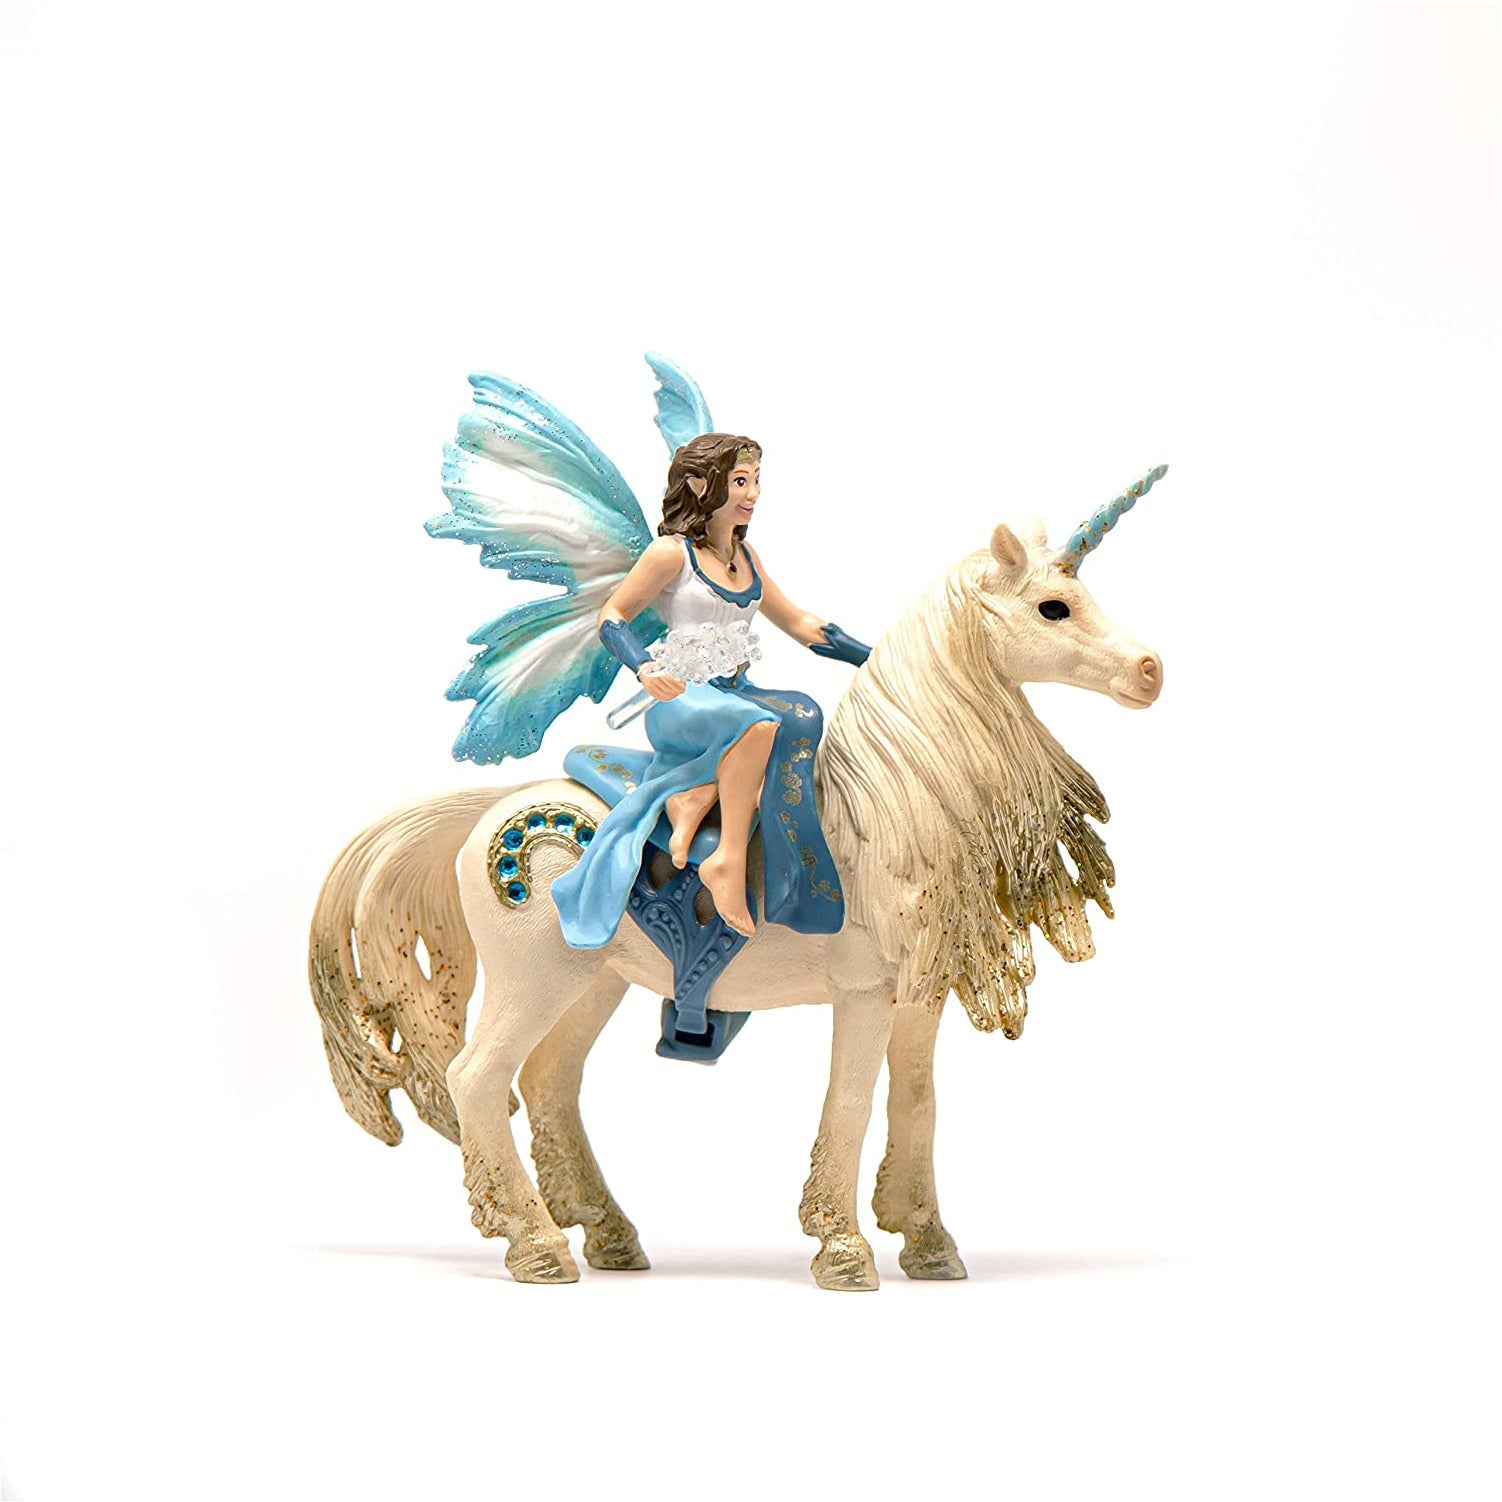 Eyela Riding On Golden Unicorn